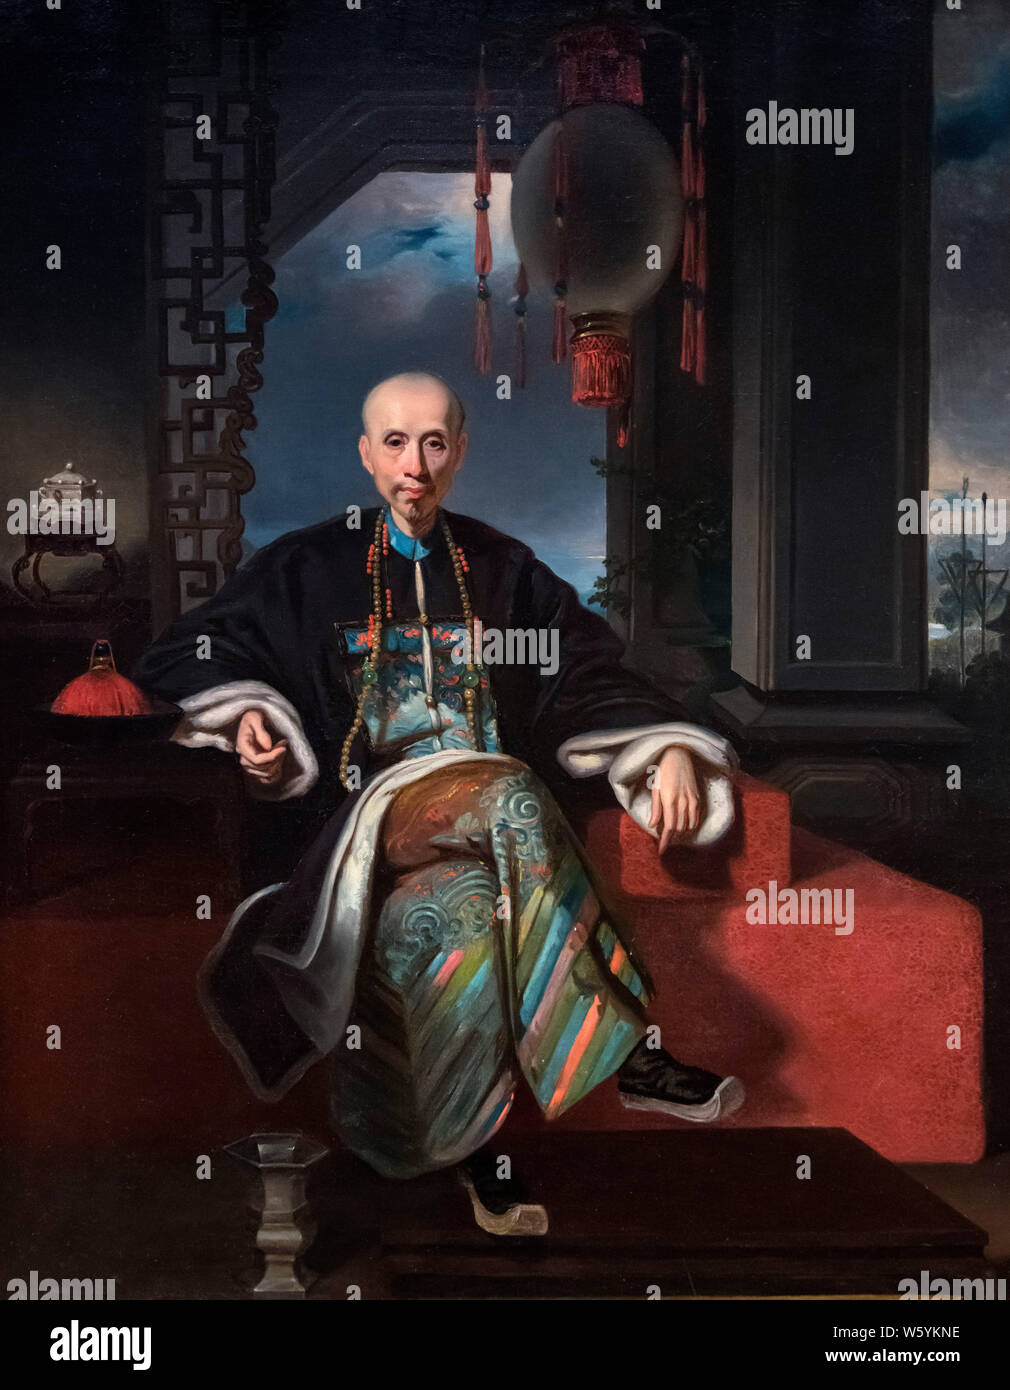 Portrait von howqua (Wu Bingjian - 1769-1843) von Kwan Kiu Cheong, Öl auf Leinwand, Anfang des 19. Jahrhunderts. Howqua war die wichtigste Der hong Kaufleute in den 13 Fabriken, Leiter der E-Hong und Führer der Kanton Cohong. Er war einmal der reichste Mann der Welt. Stockfoto